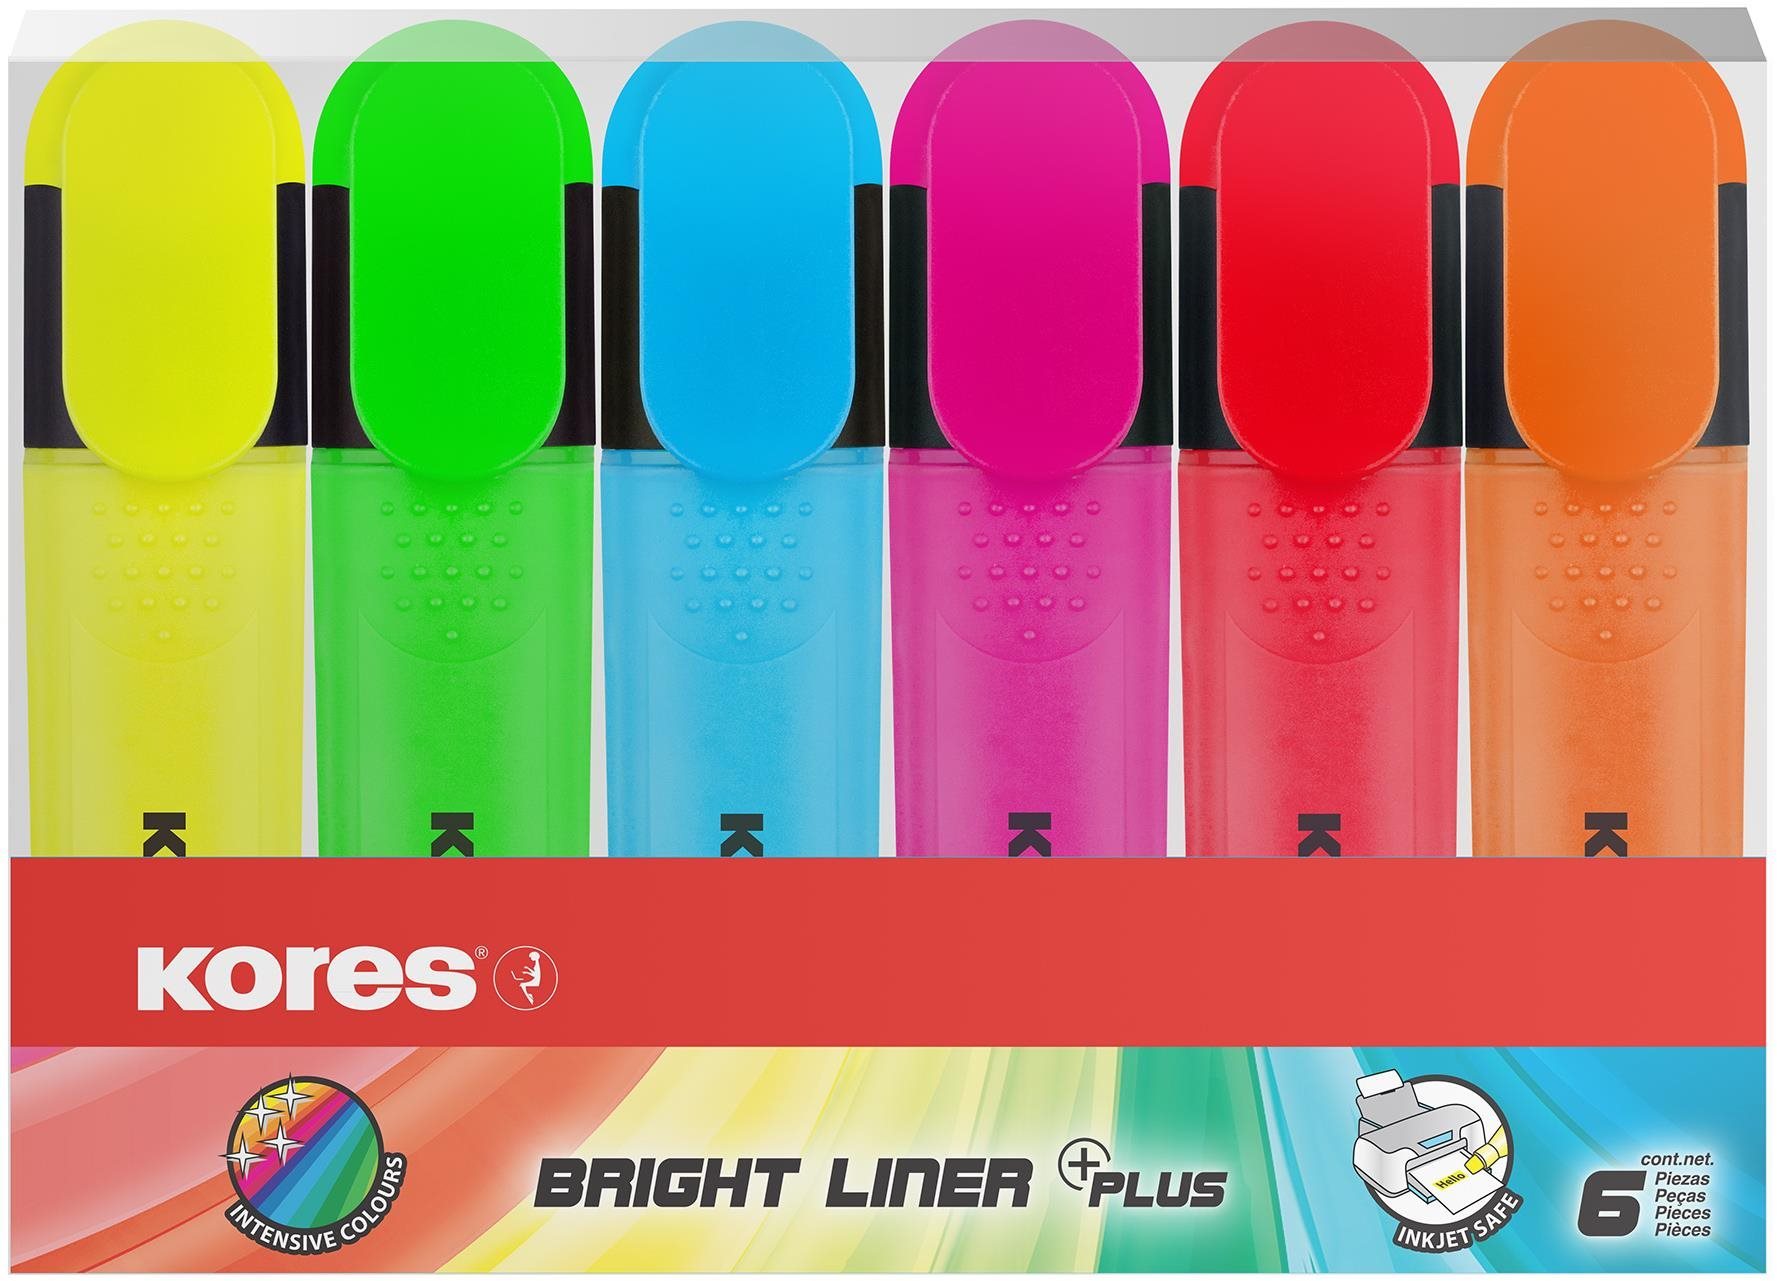 KORES BRIGHT LINER PLUS 6 színből álló szett (sárga, zöld, rózsaszín, narancsszín, kék, piros)